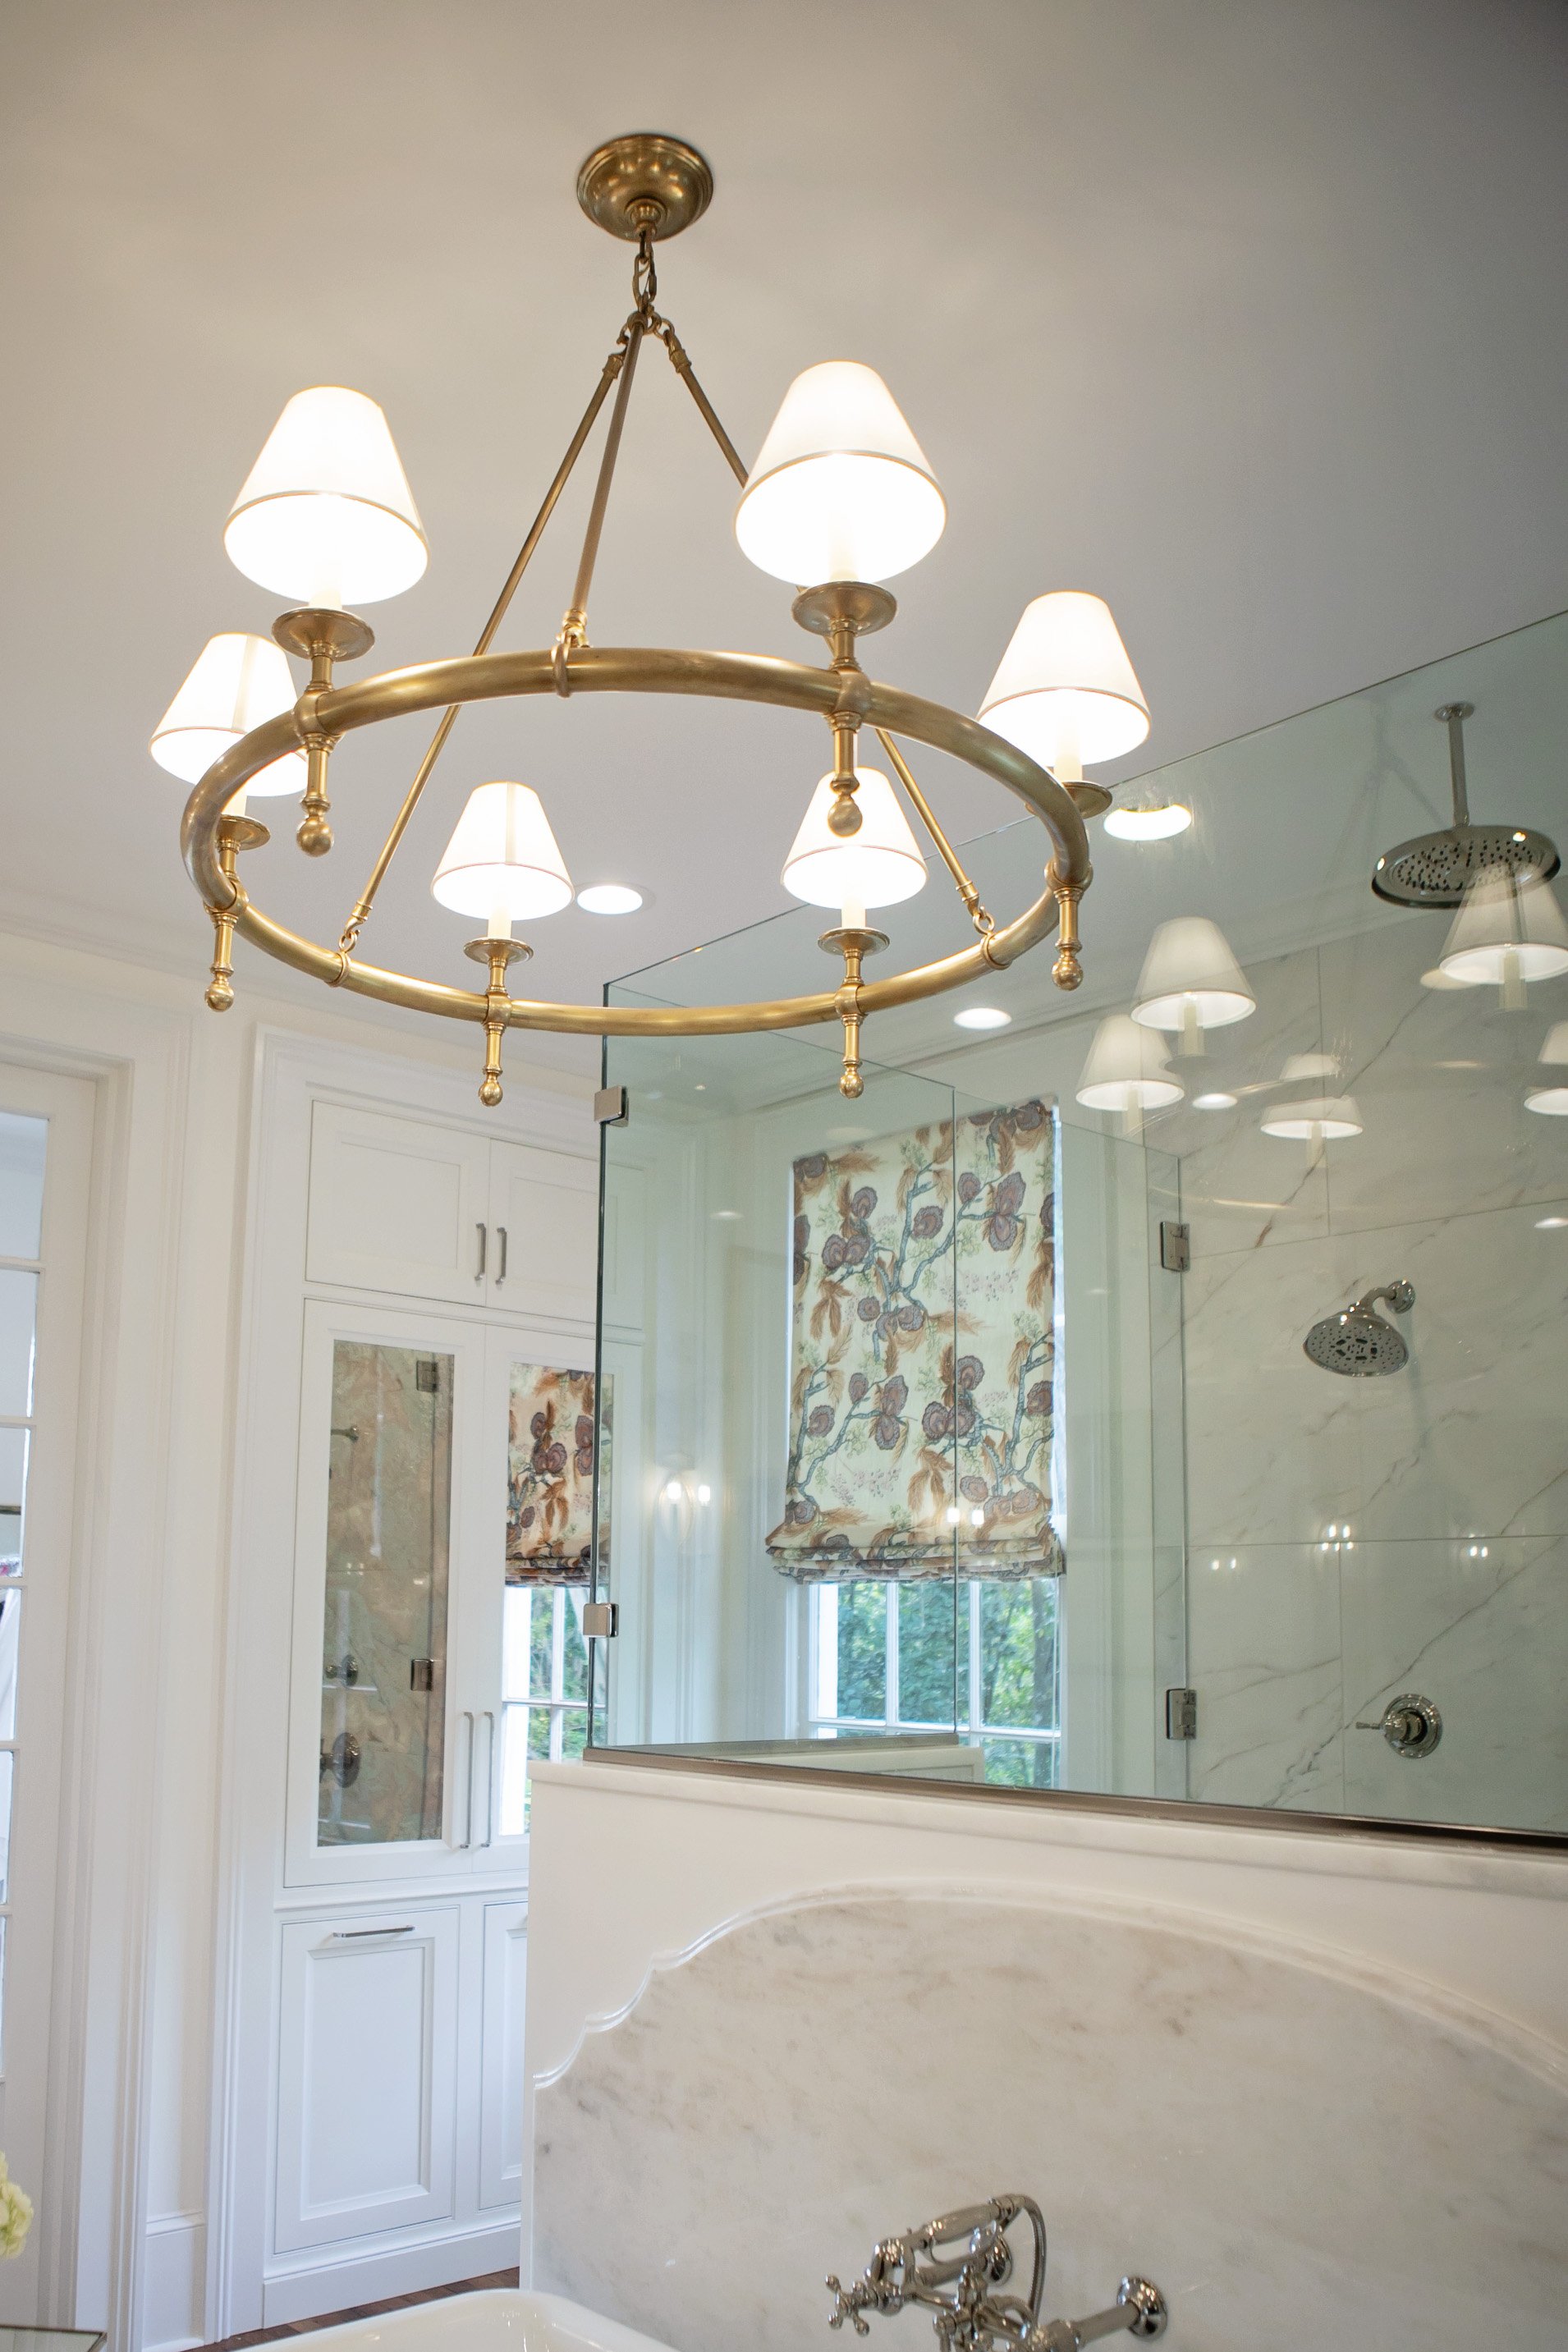 Traditional Gold Chandelier in Southern Bathroom_Pool Brothers Lighting_Leesburg, GA.jpg